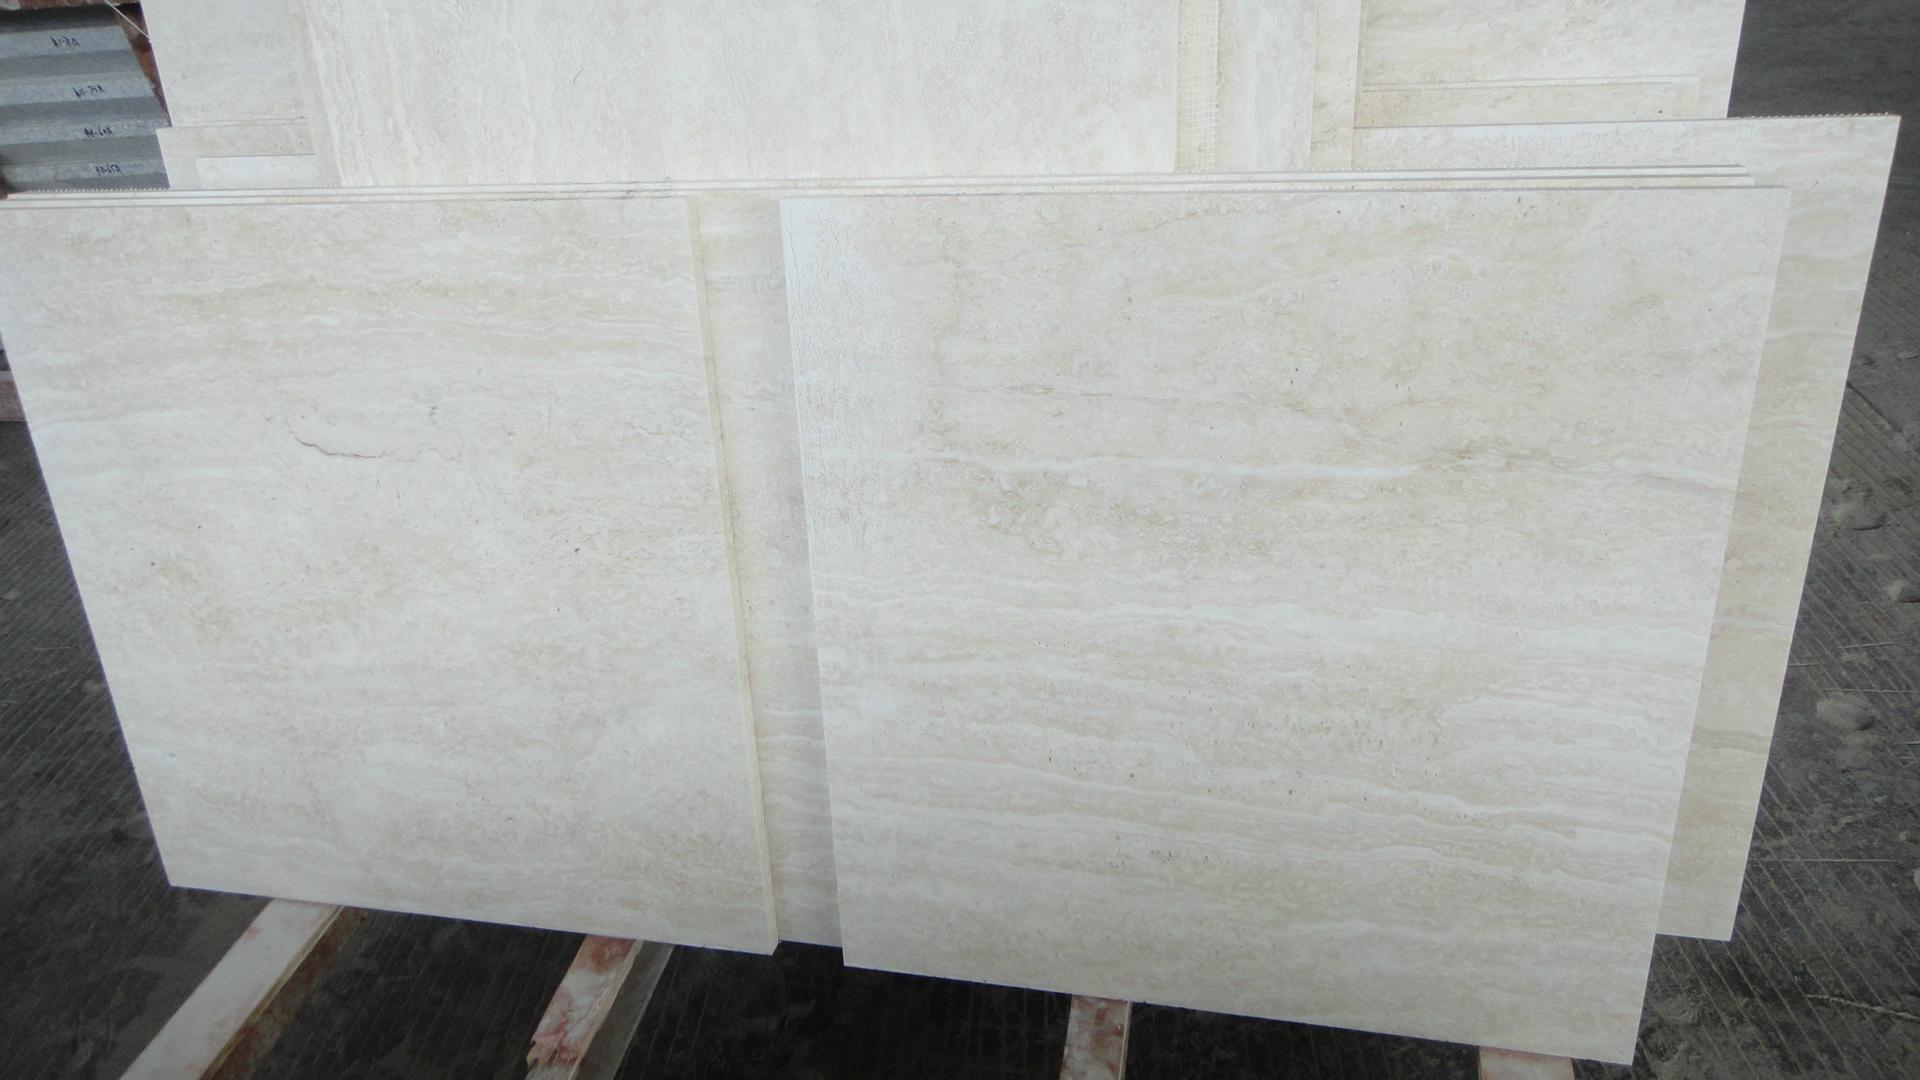 Honed White Travertine Floor Tiles